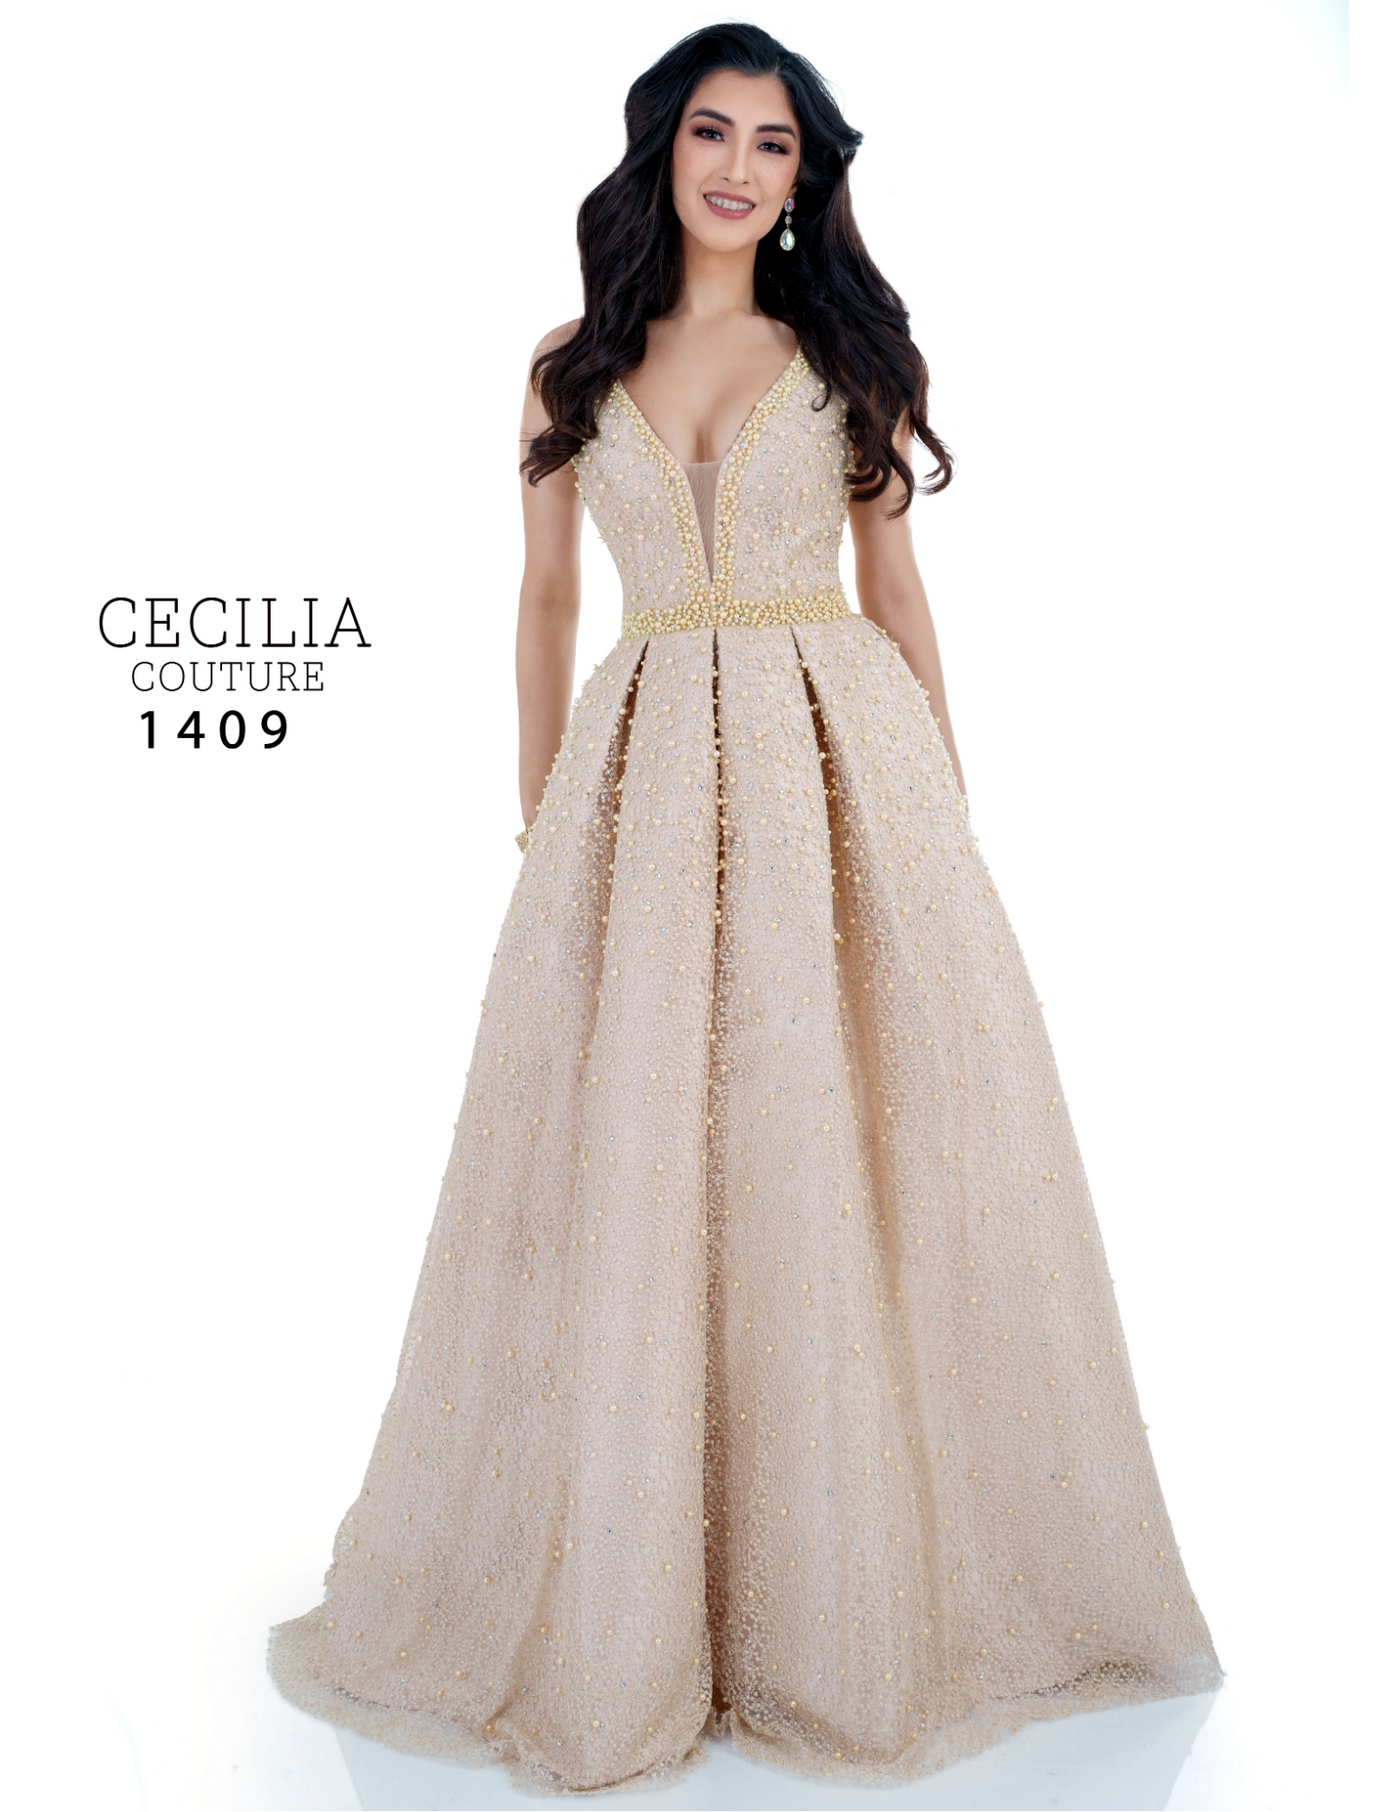 Cecilia Couture 1409 Champagne Prom Dress